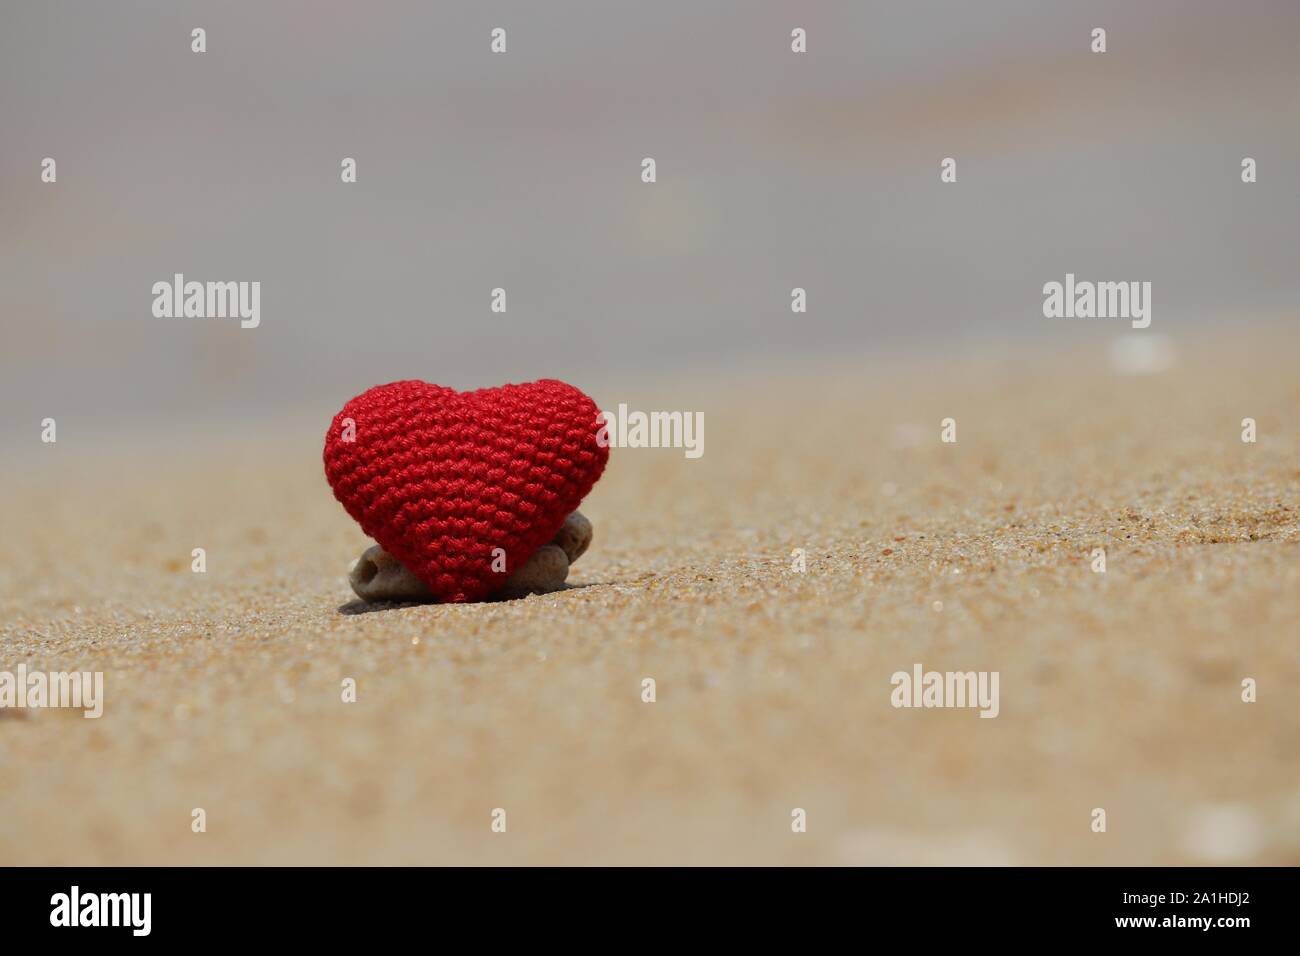 Vacances romantiques, rouge en coeur sur un sable d'une plage ensoleillée. Concept d'amour, des vacances et romance Banque D'Images